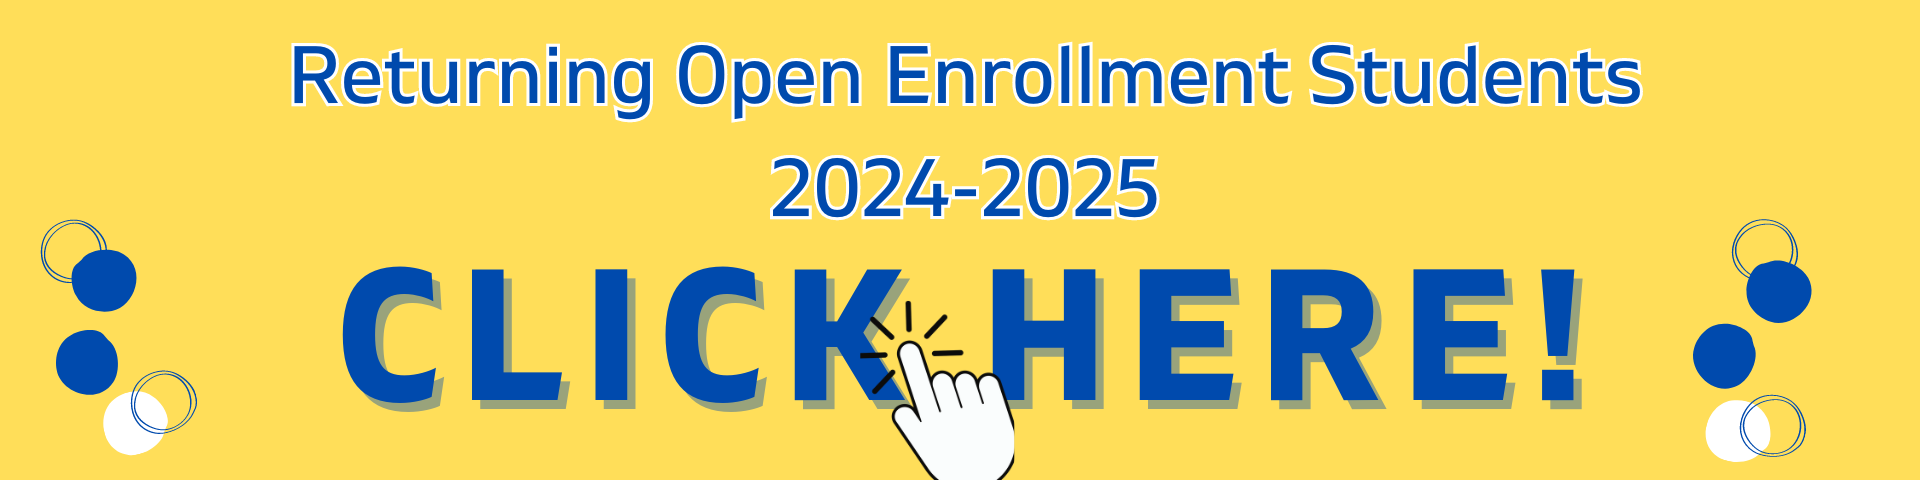 Returning Open Enrollment